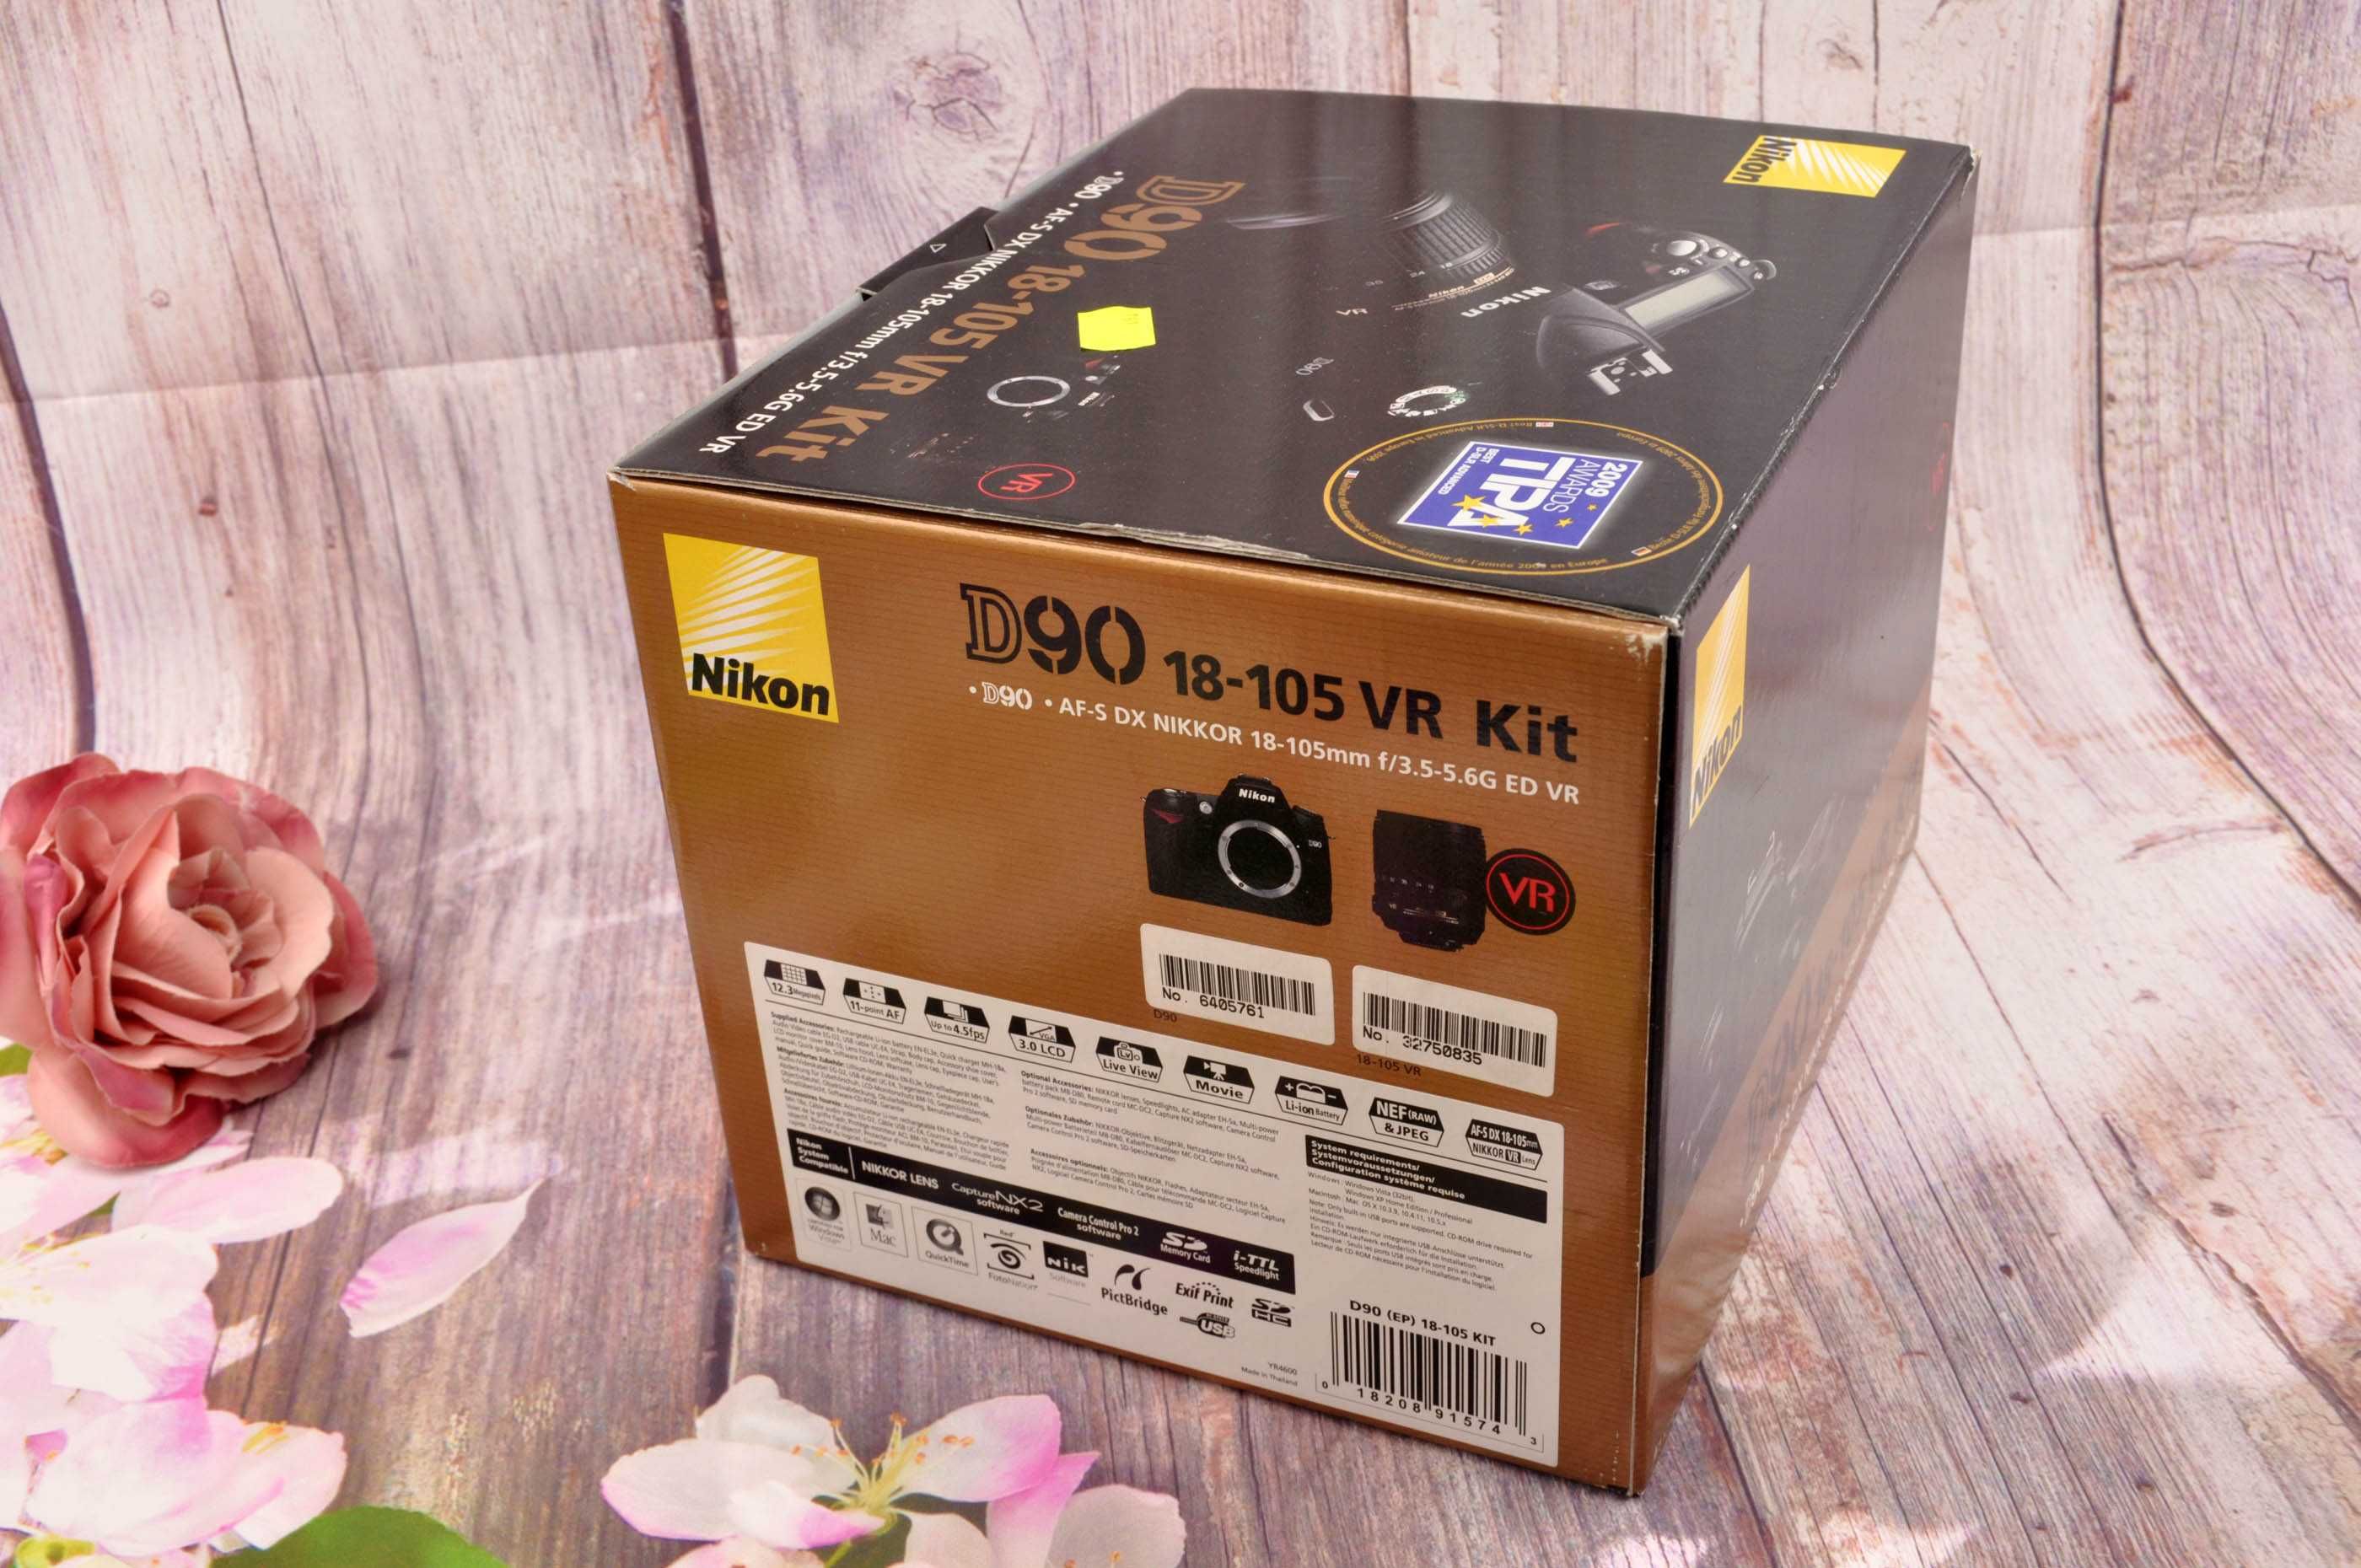 Nikon D 90 oryginalne opakowanie ( tylko pudełko )